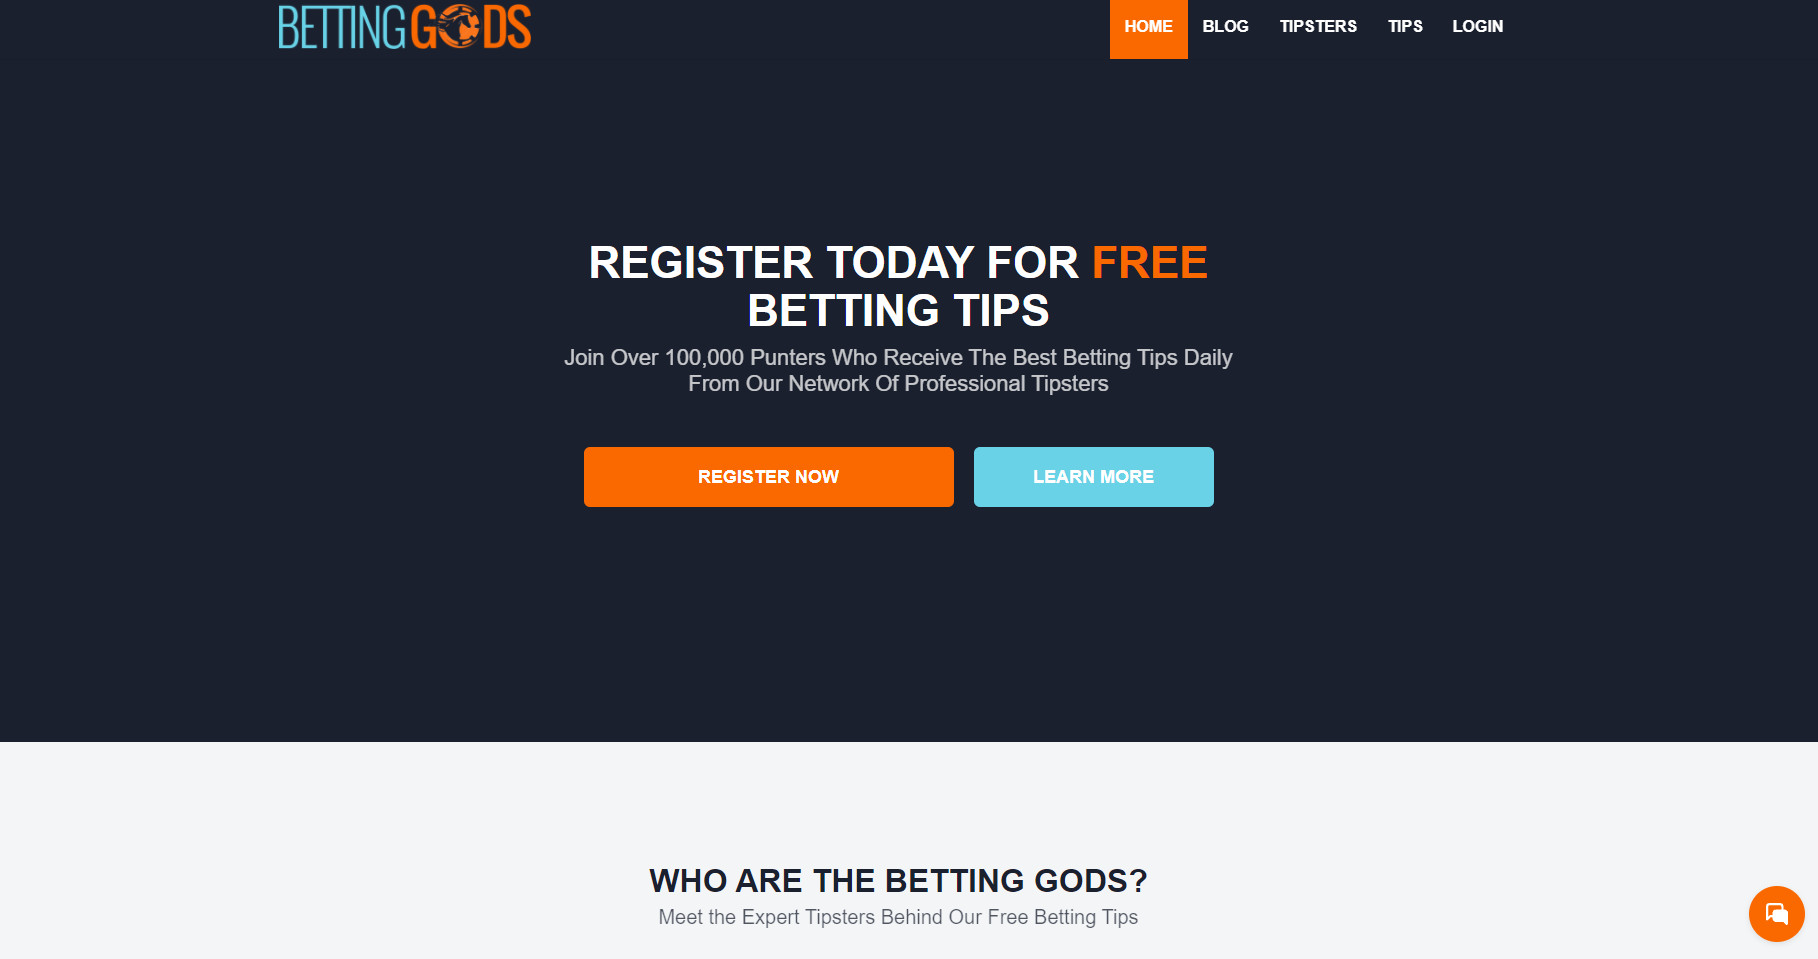 Betting Gods Homepage